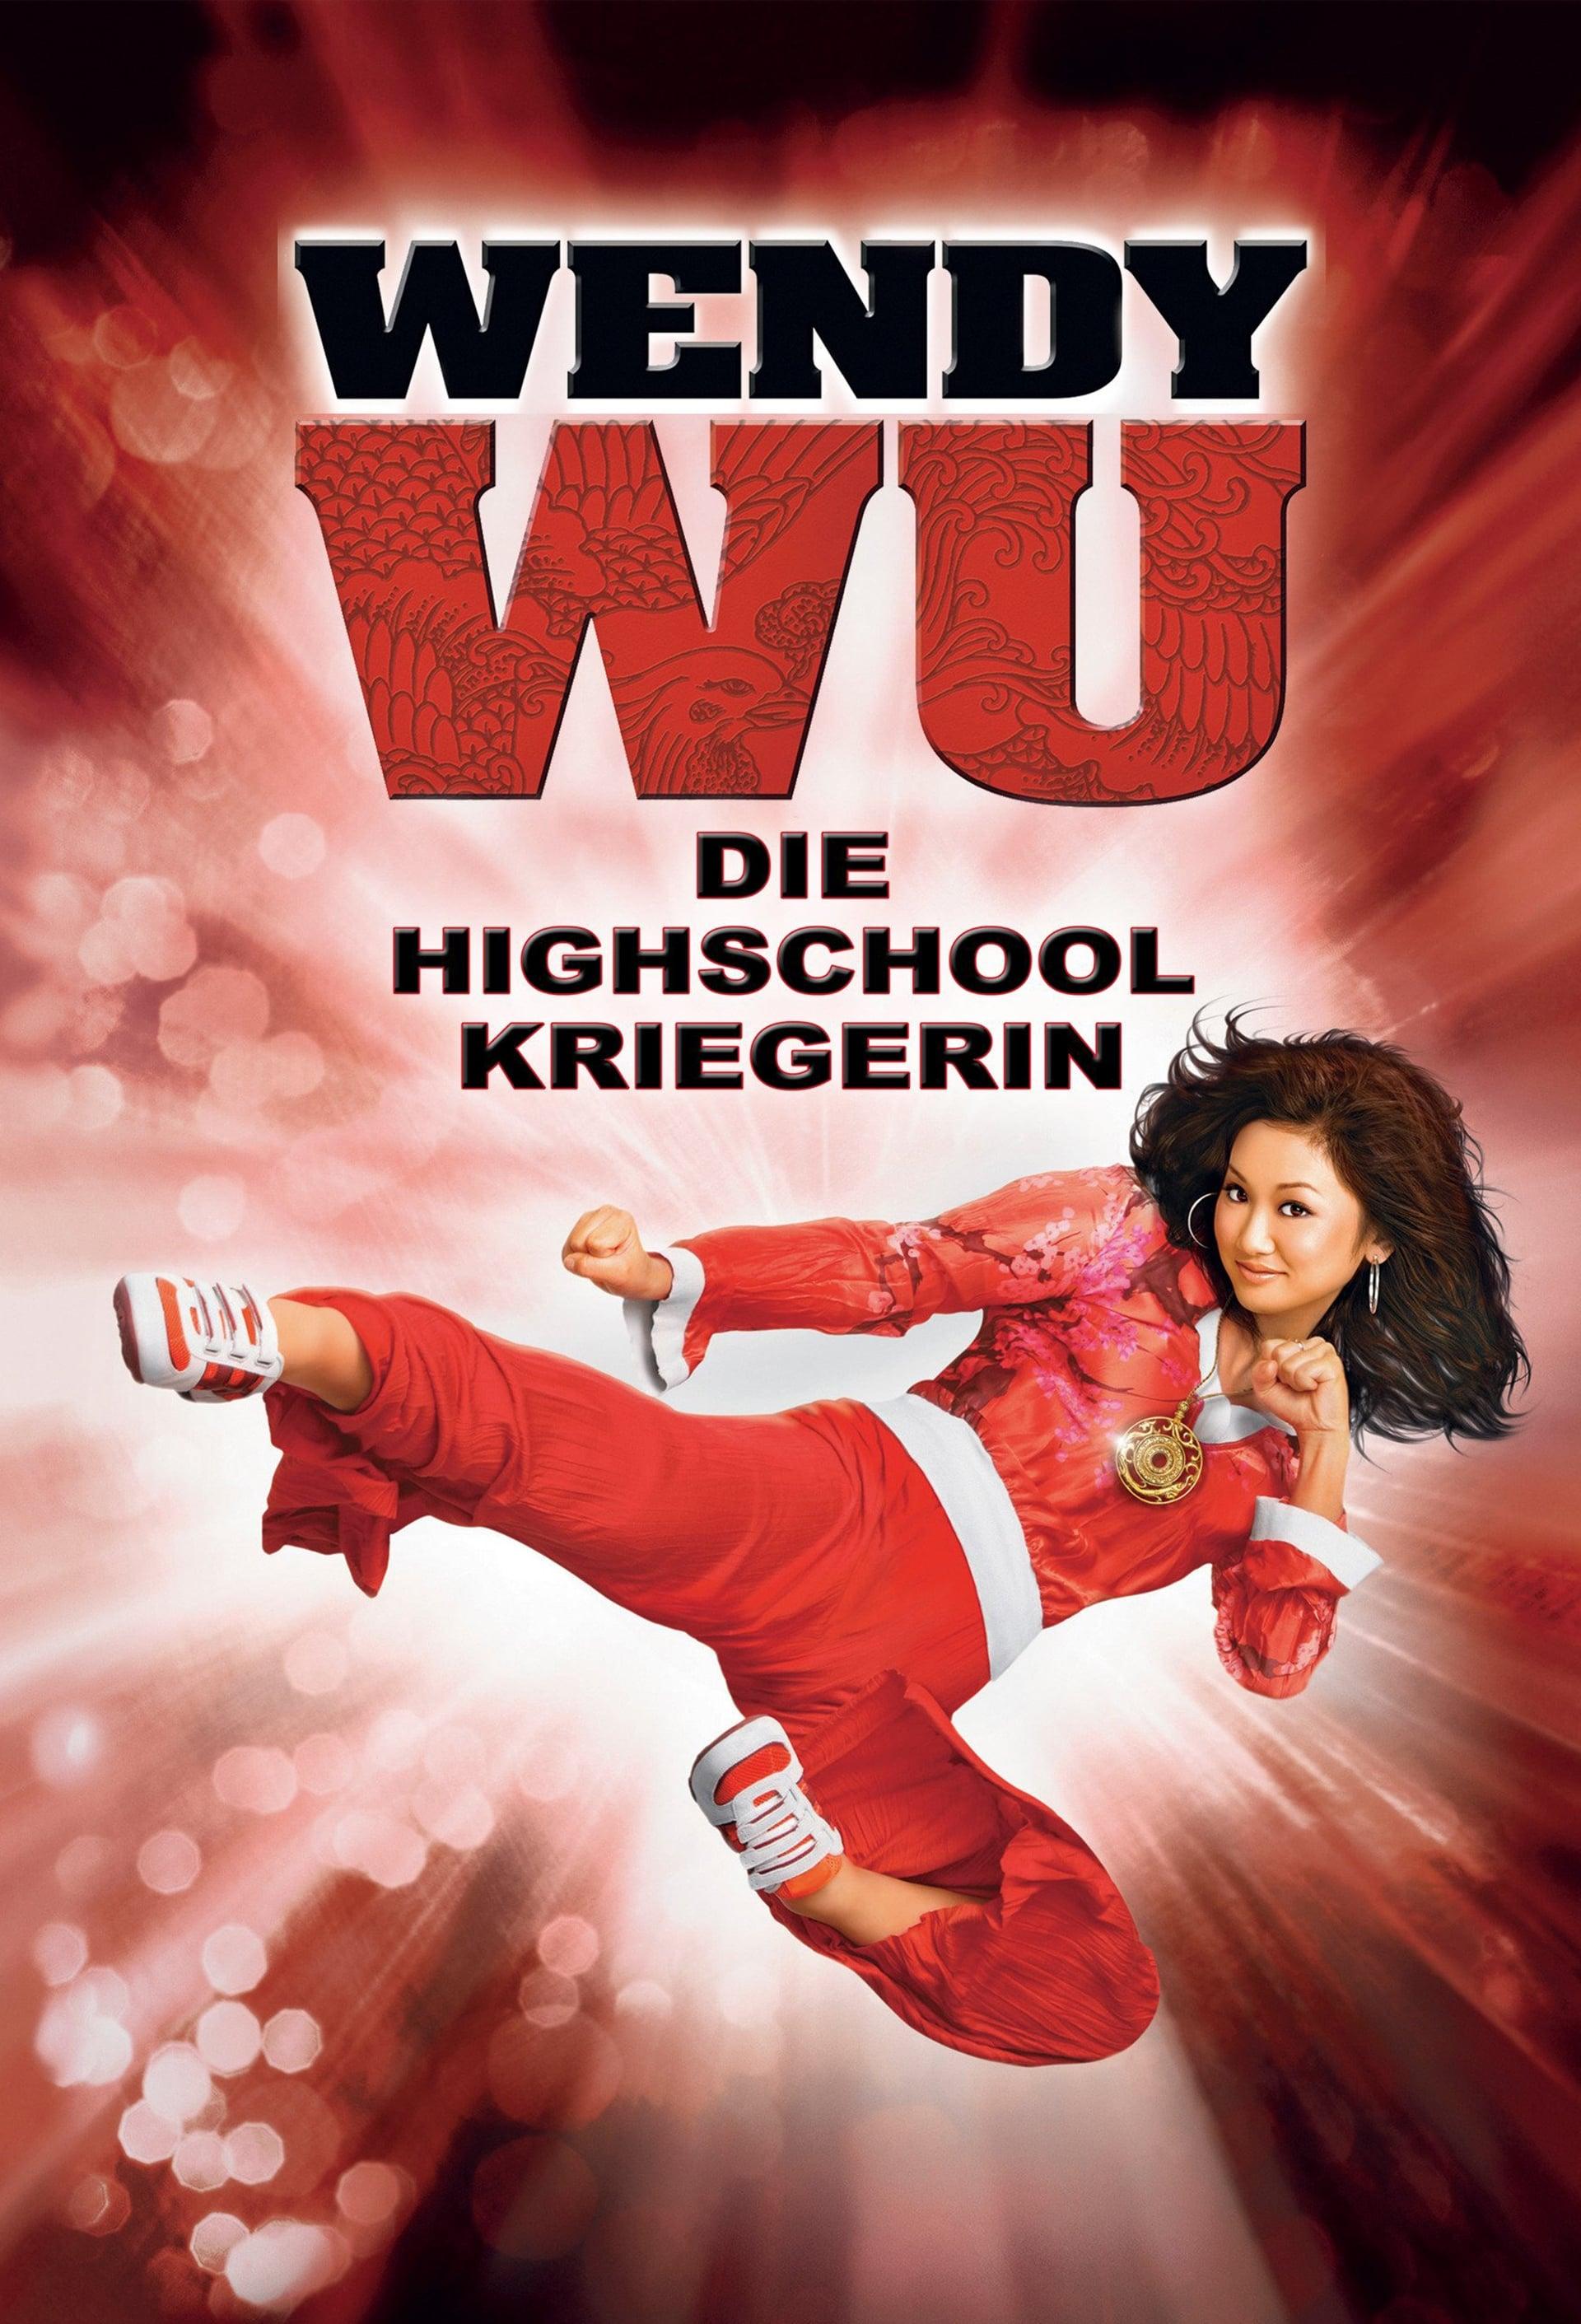 Wendy Wu - Die Highschool-Kriegerin poster